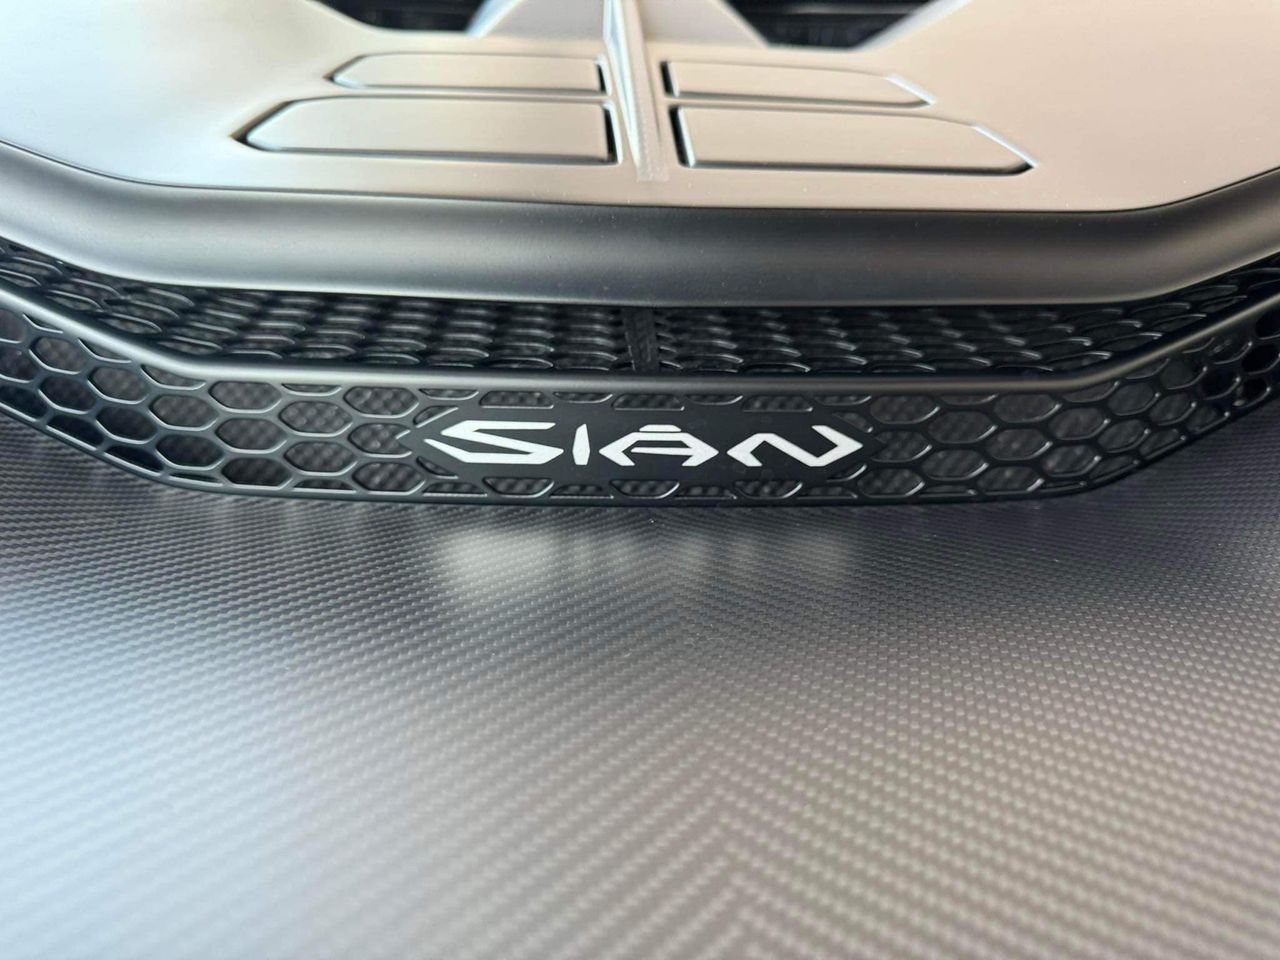 Hoàng Kim Khánh liên tục thả thính loạt siêu xe khủng: Từ Lamborghini Sian, Revuelto đến công khai đặt mua McLaren 750S vừa mới ra mắt - ảnh 5